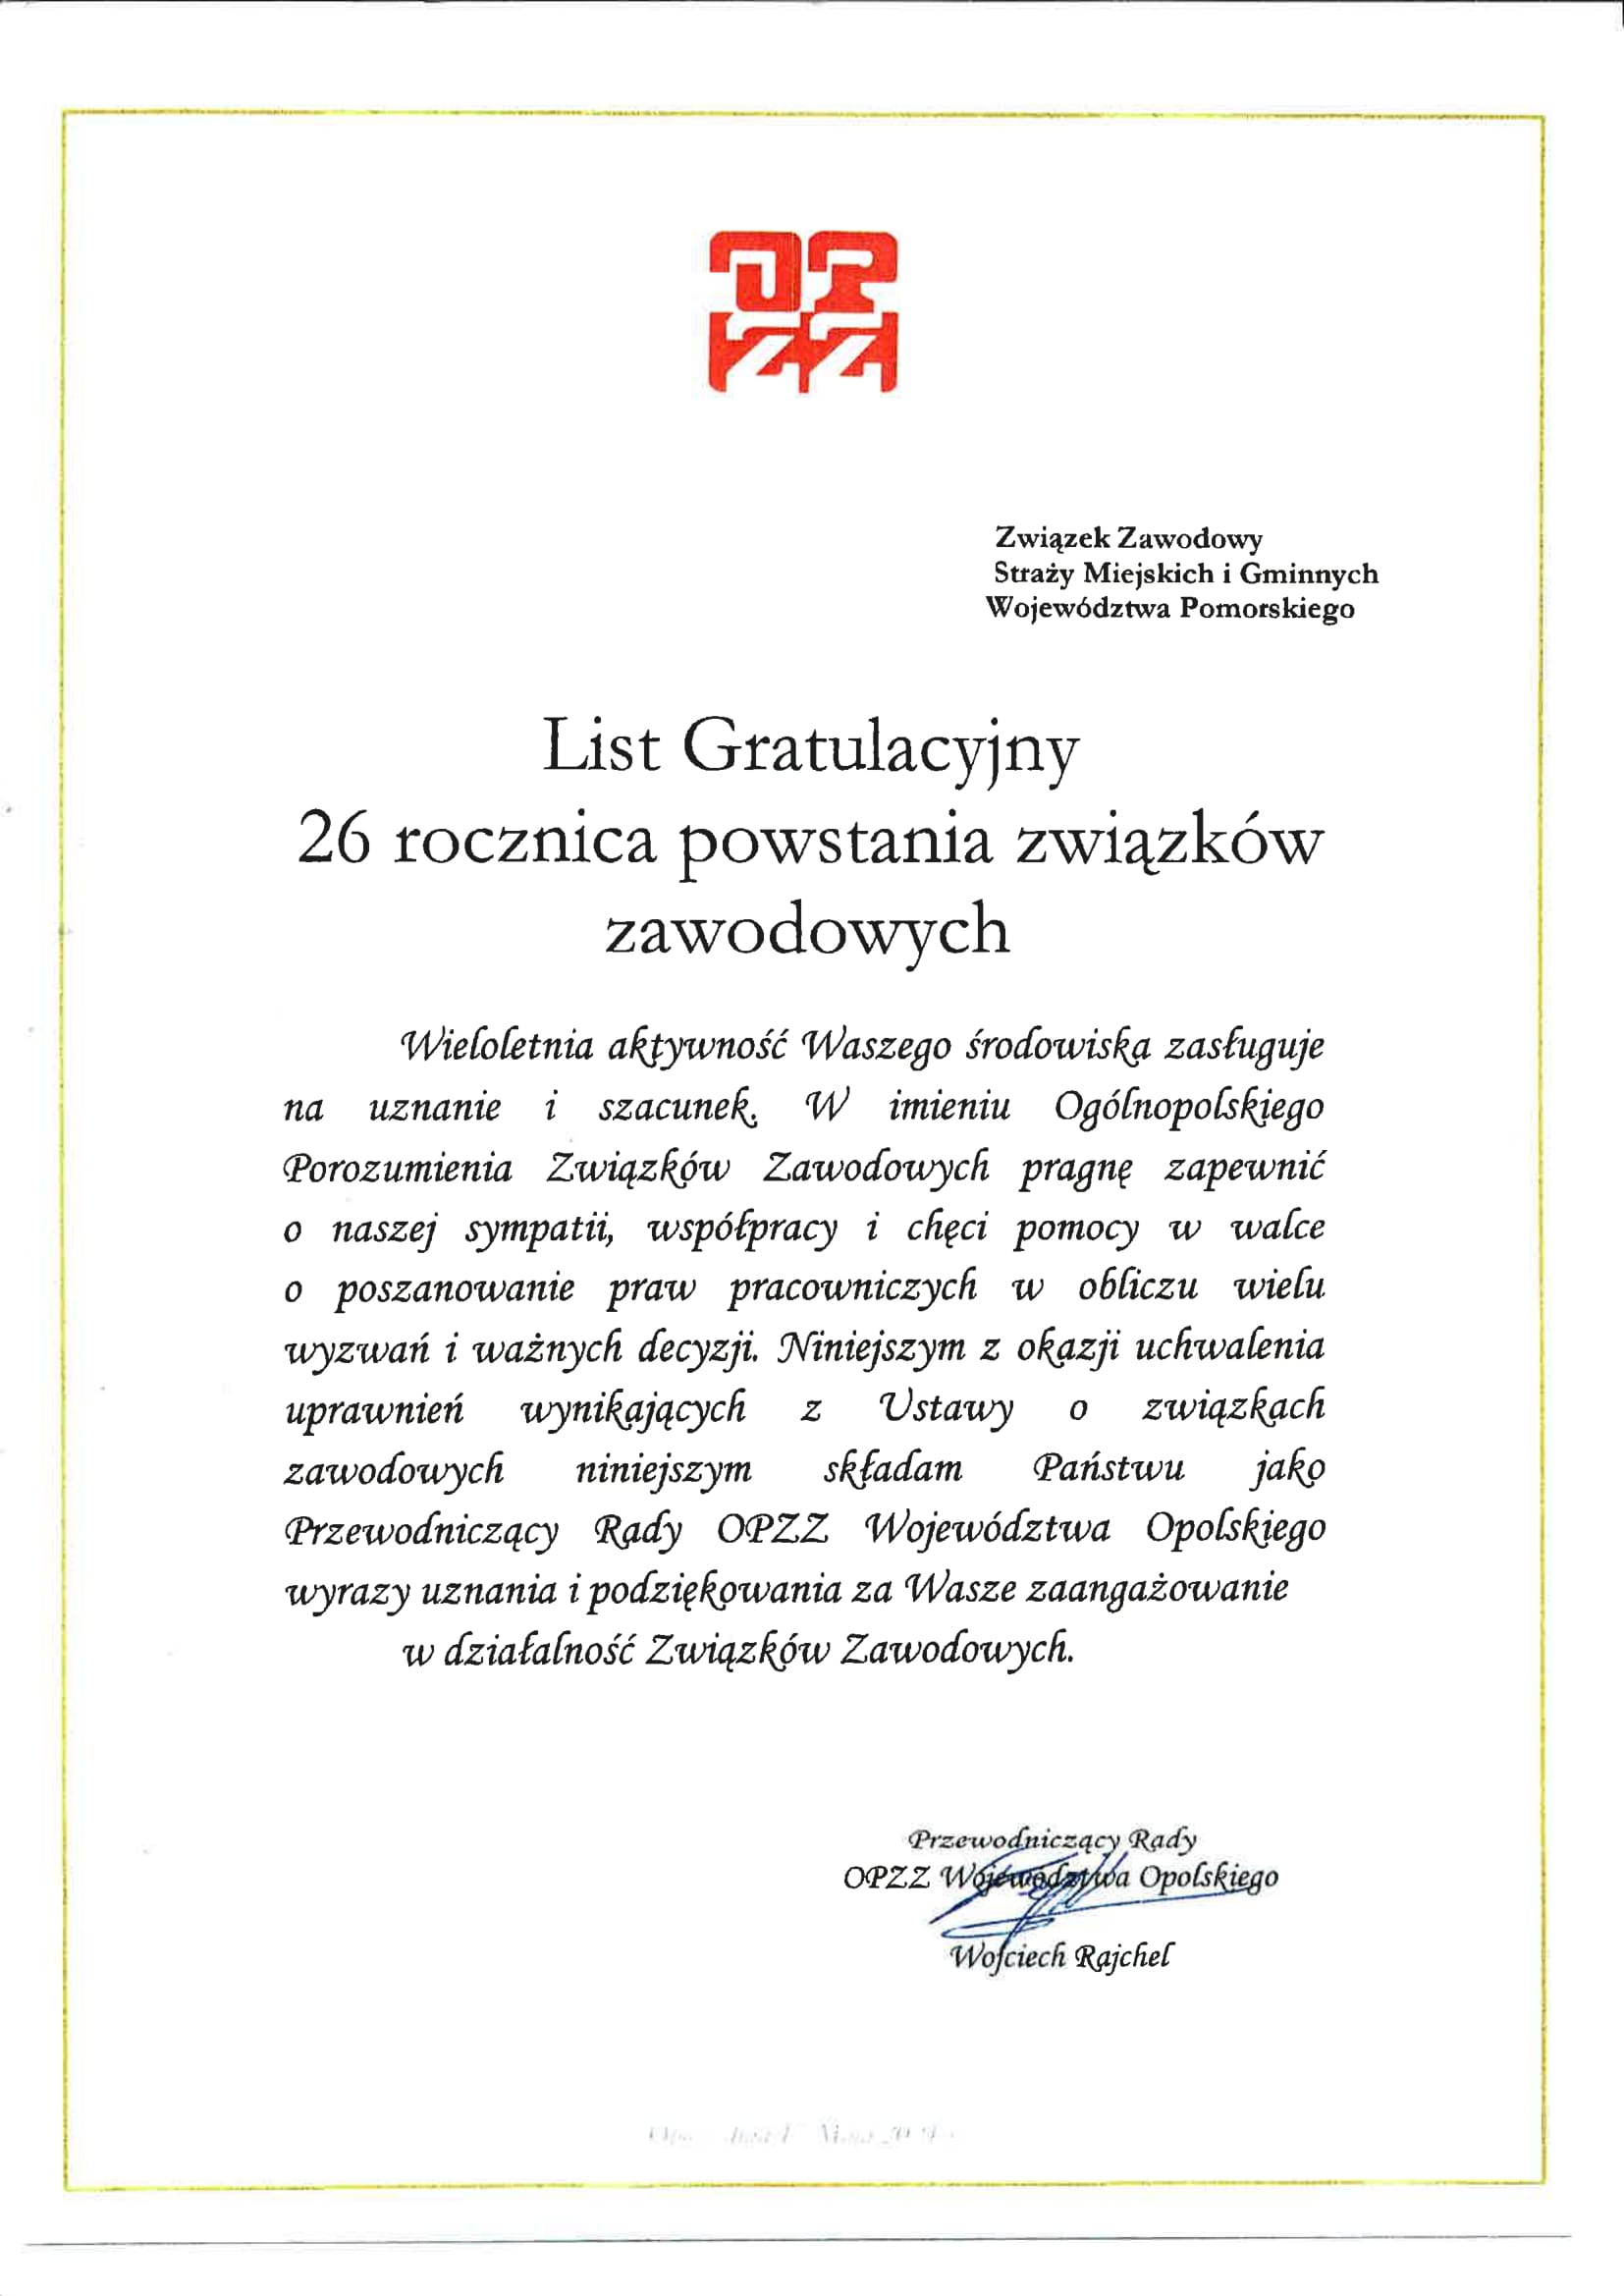 List-gratulacyjny-Rada-OPZZ-woj.-opolskiego-1